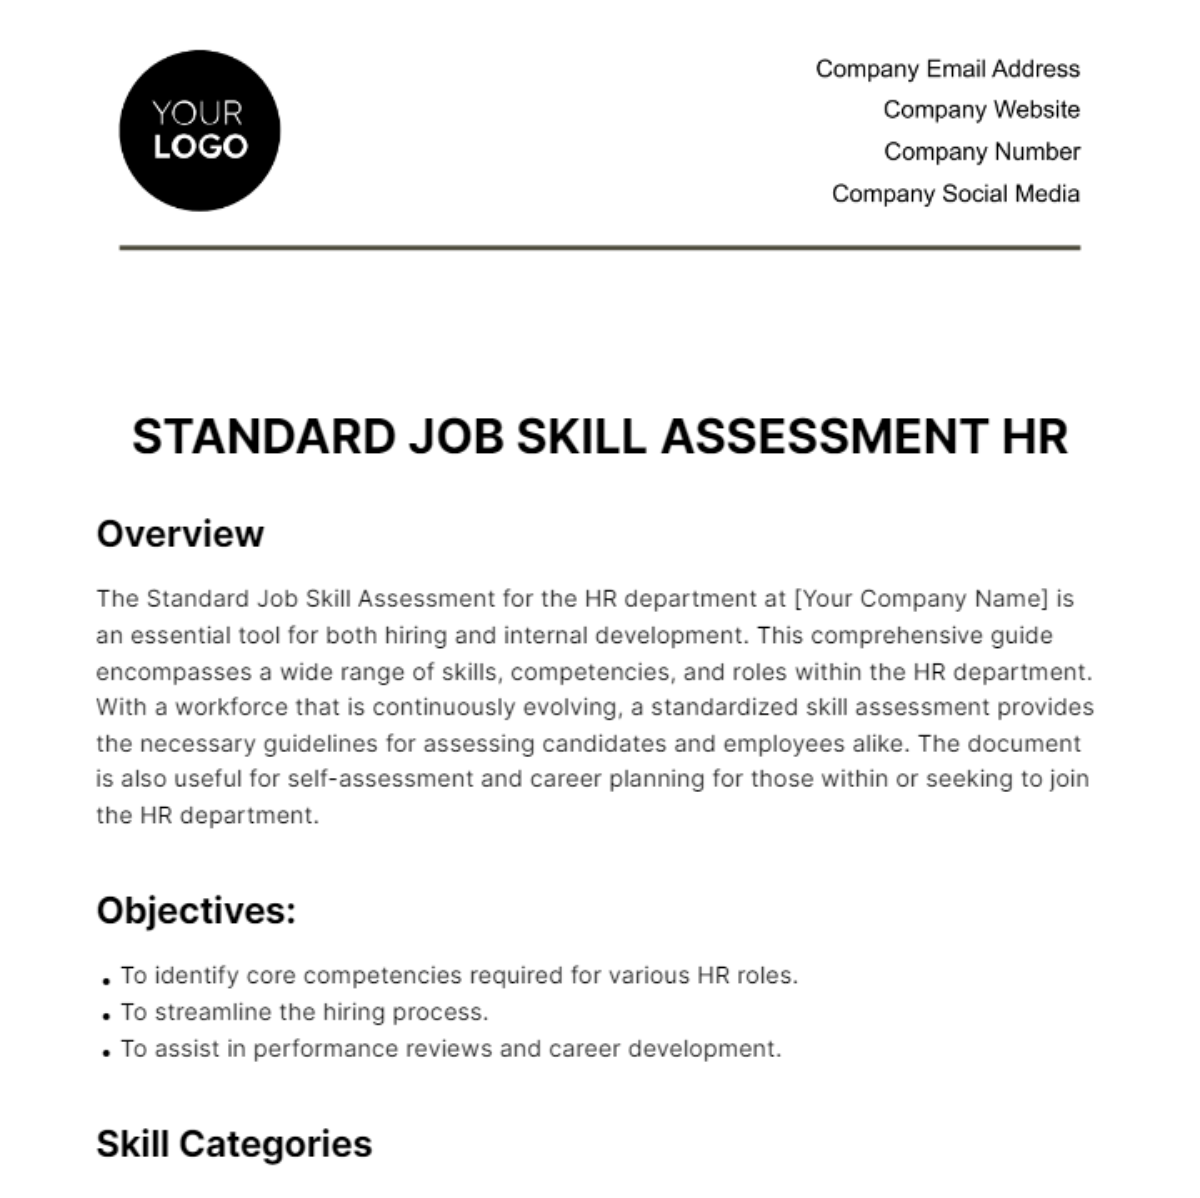 Standard Job Skill Assessment HR Template in Word, Google Docs, PDF